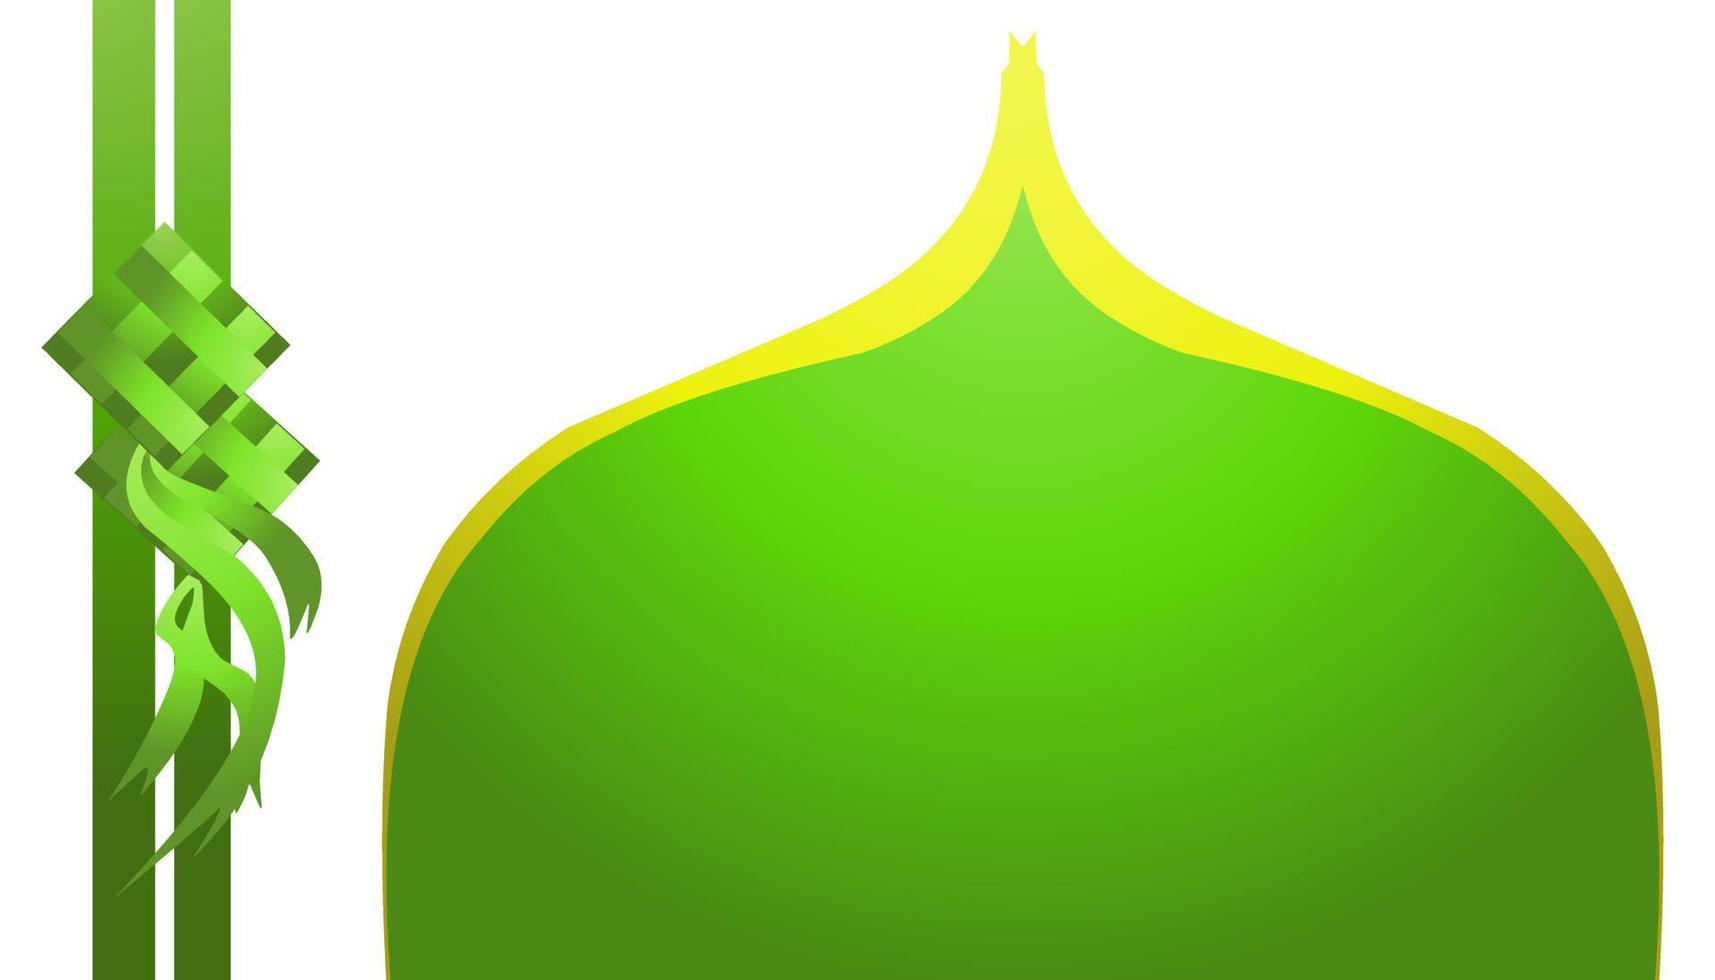 fundo ilustração do a tema do Ramadã e eid al-fitr e eid al-adha, com As fotos do verde e amarelo mesquita cúpulas e verde diamantes ou ketupat muçulmano embalado arroz vetor